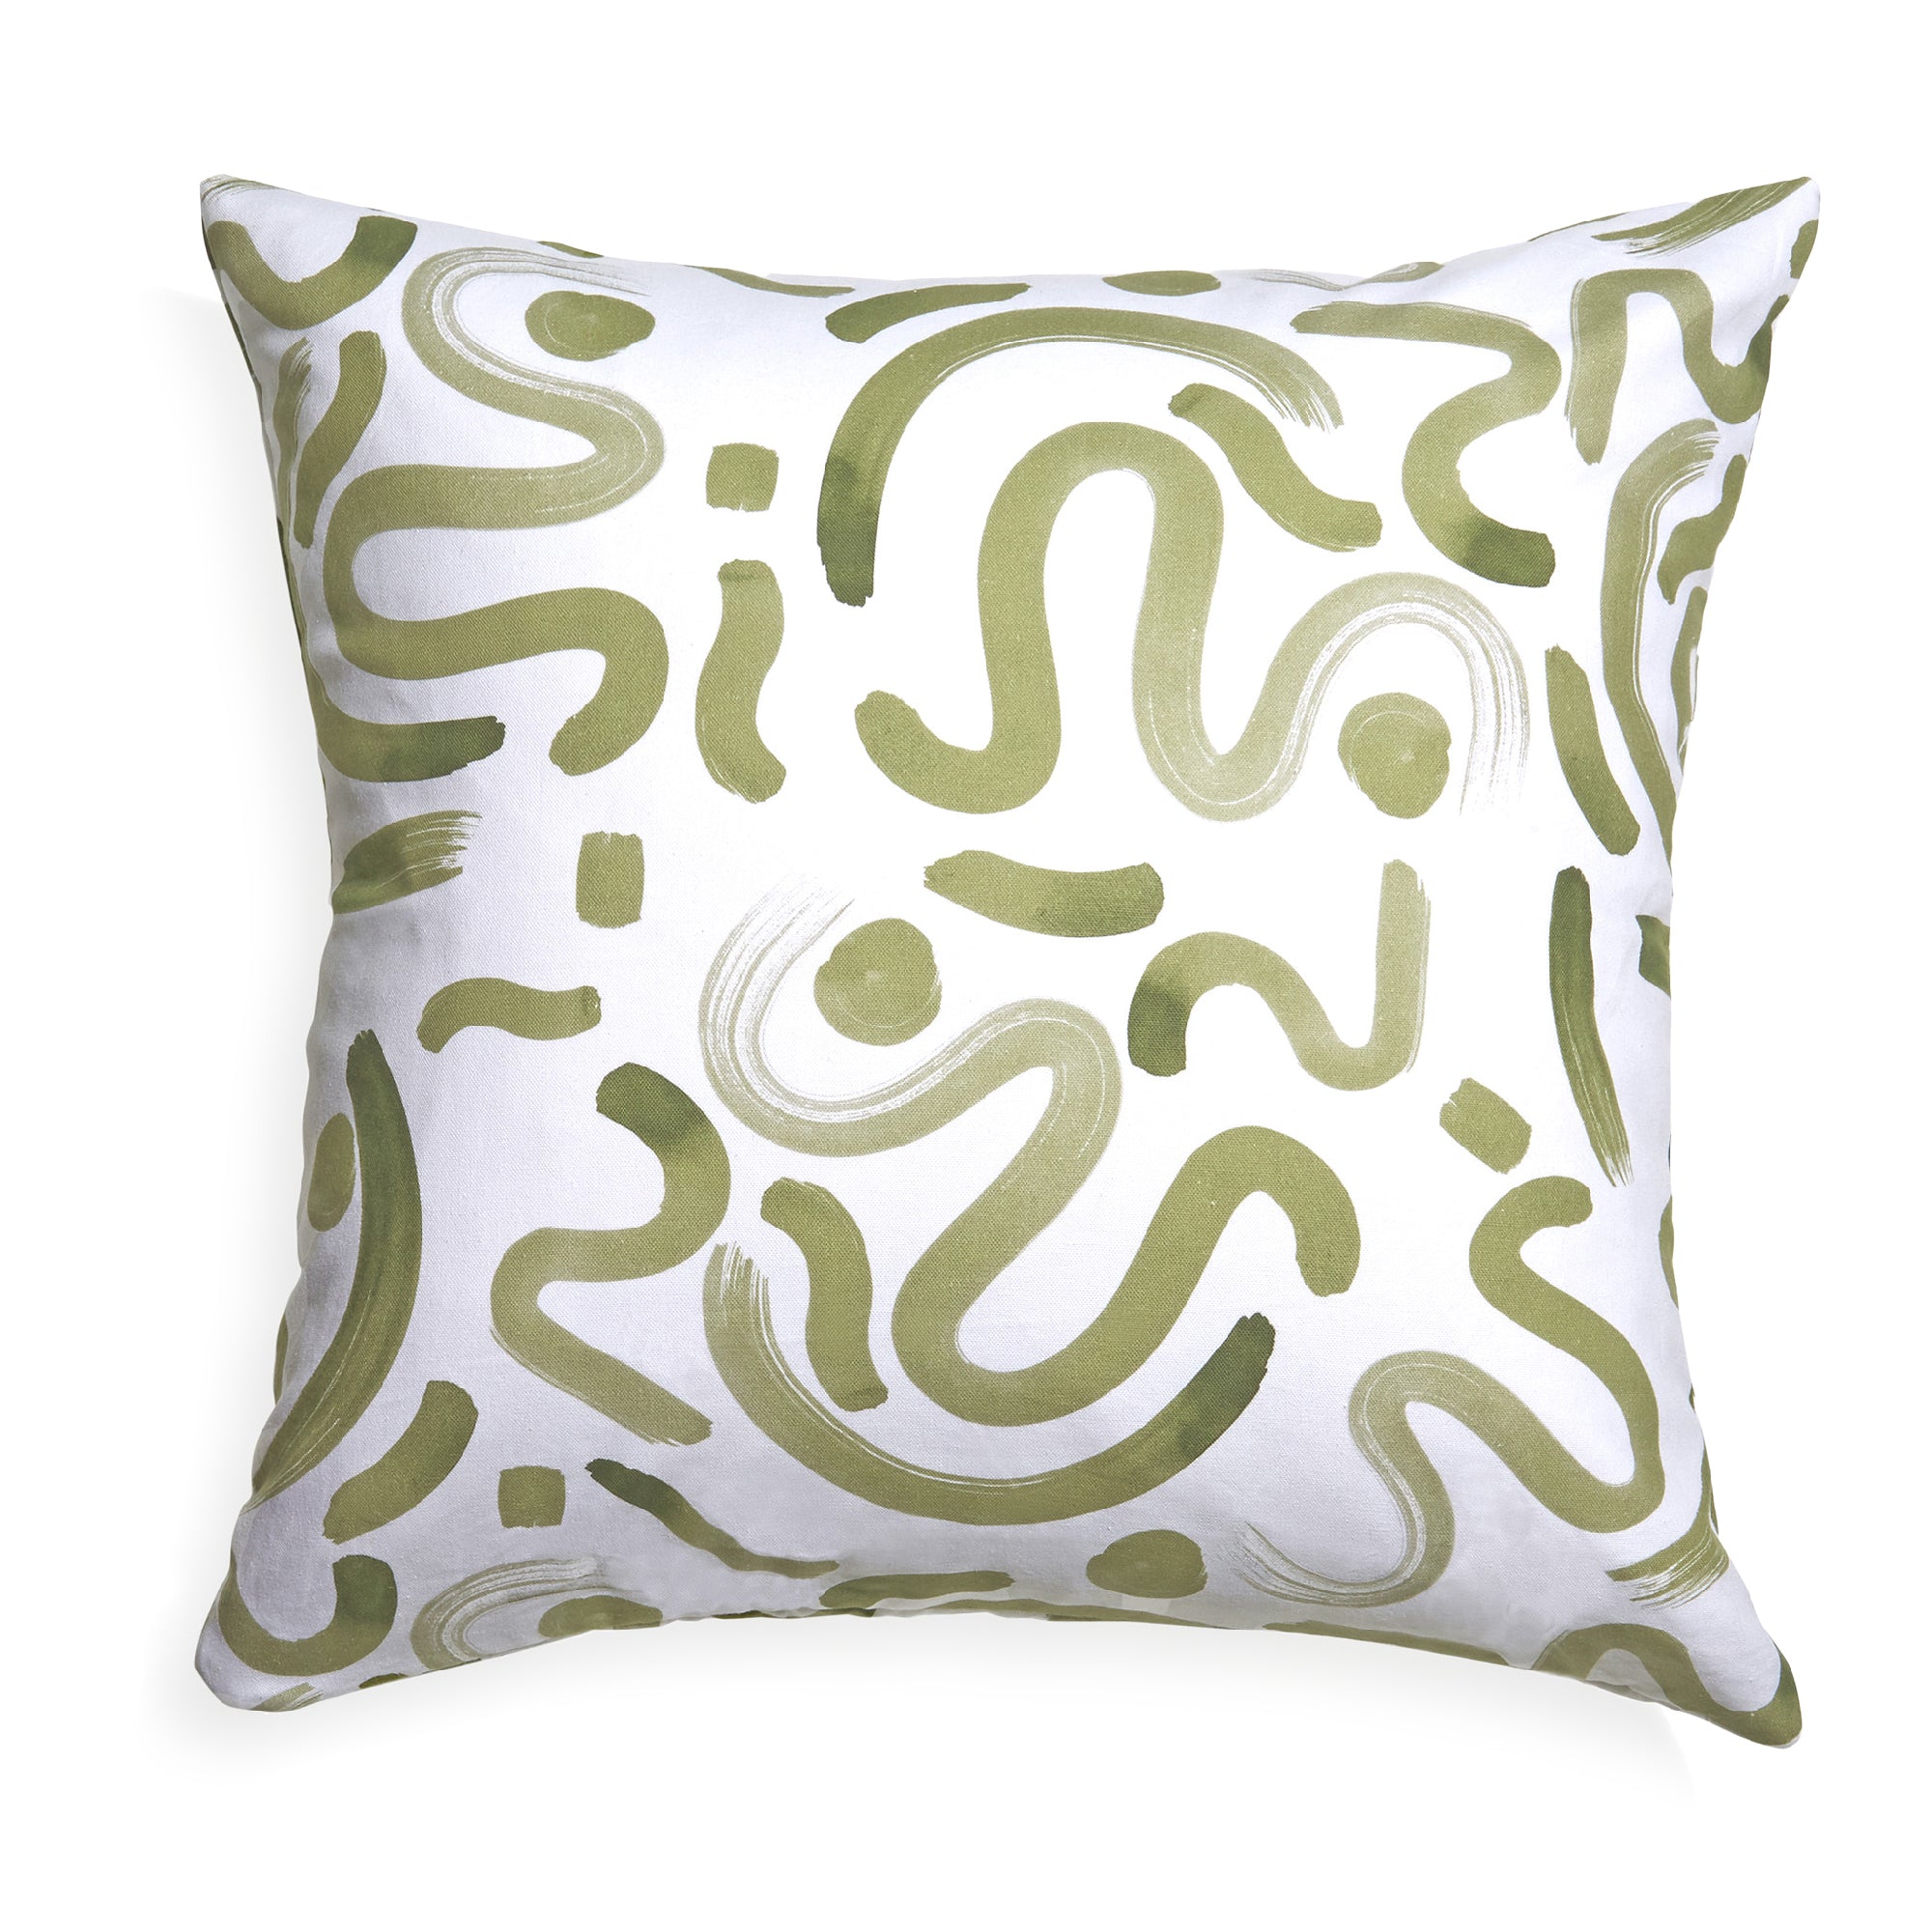 Moss Green Printed Pillow